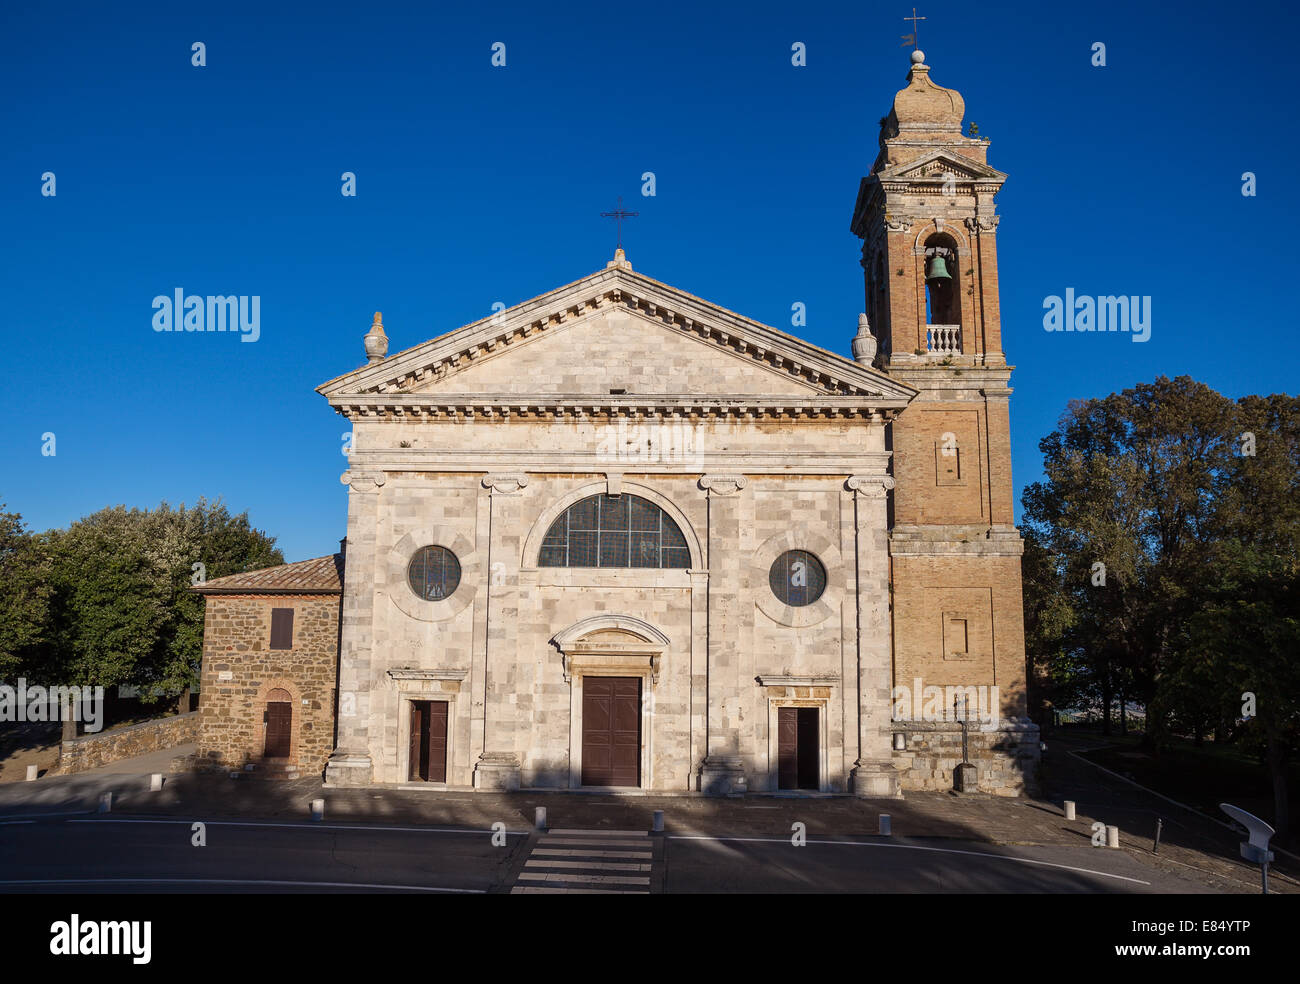 Église néo-classique de Toscane Madonna del Soccorso à Montalcino, Italie Banque D'Images